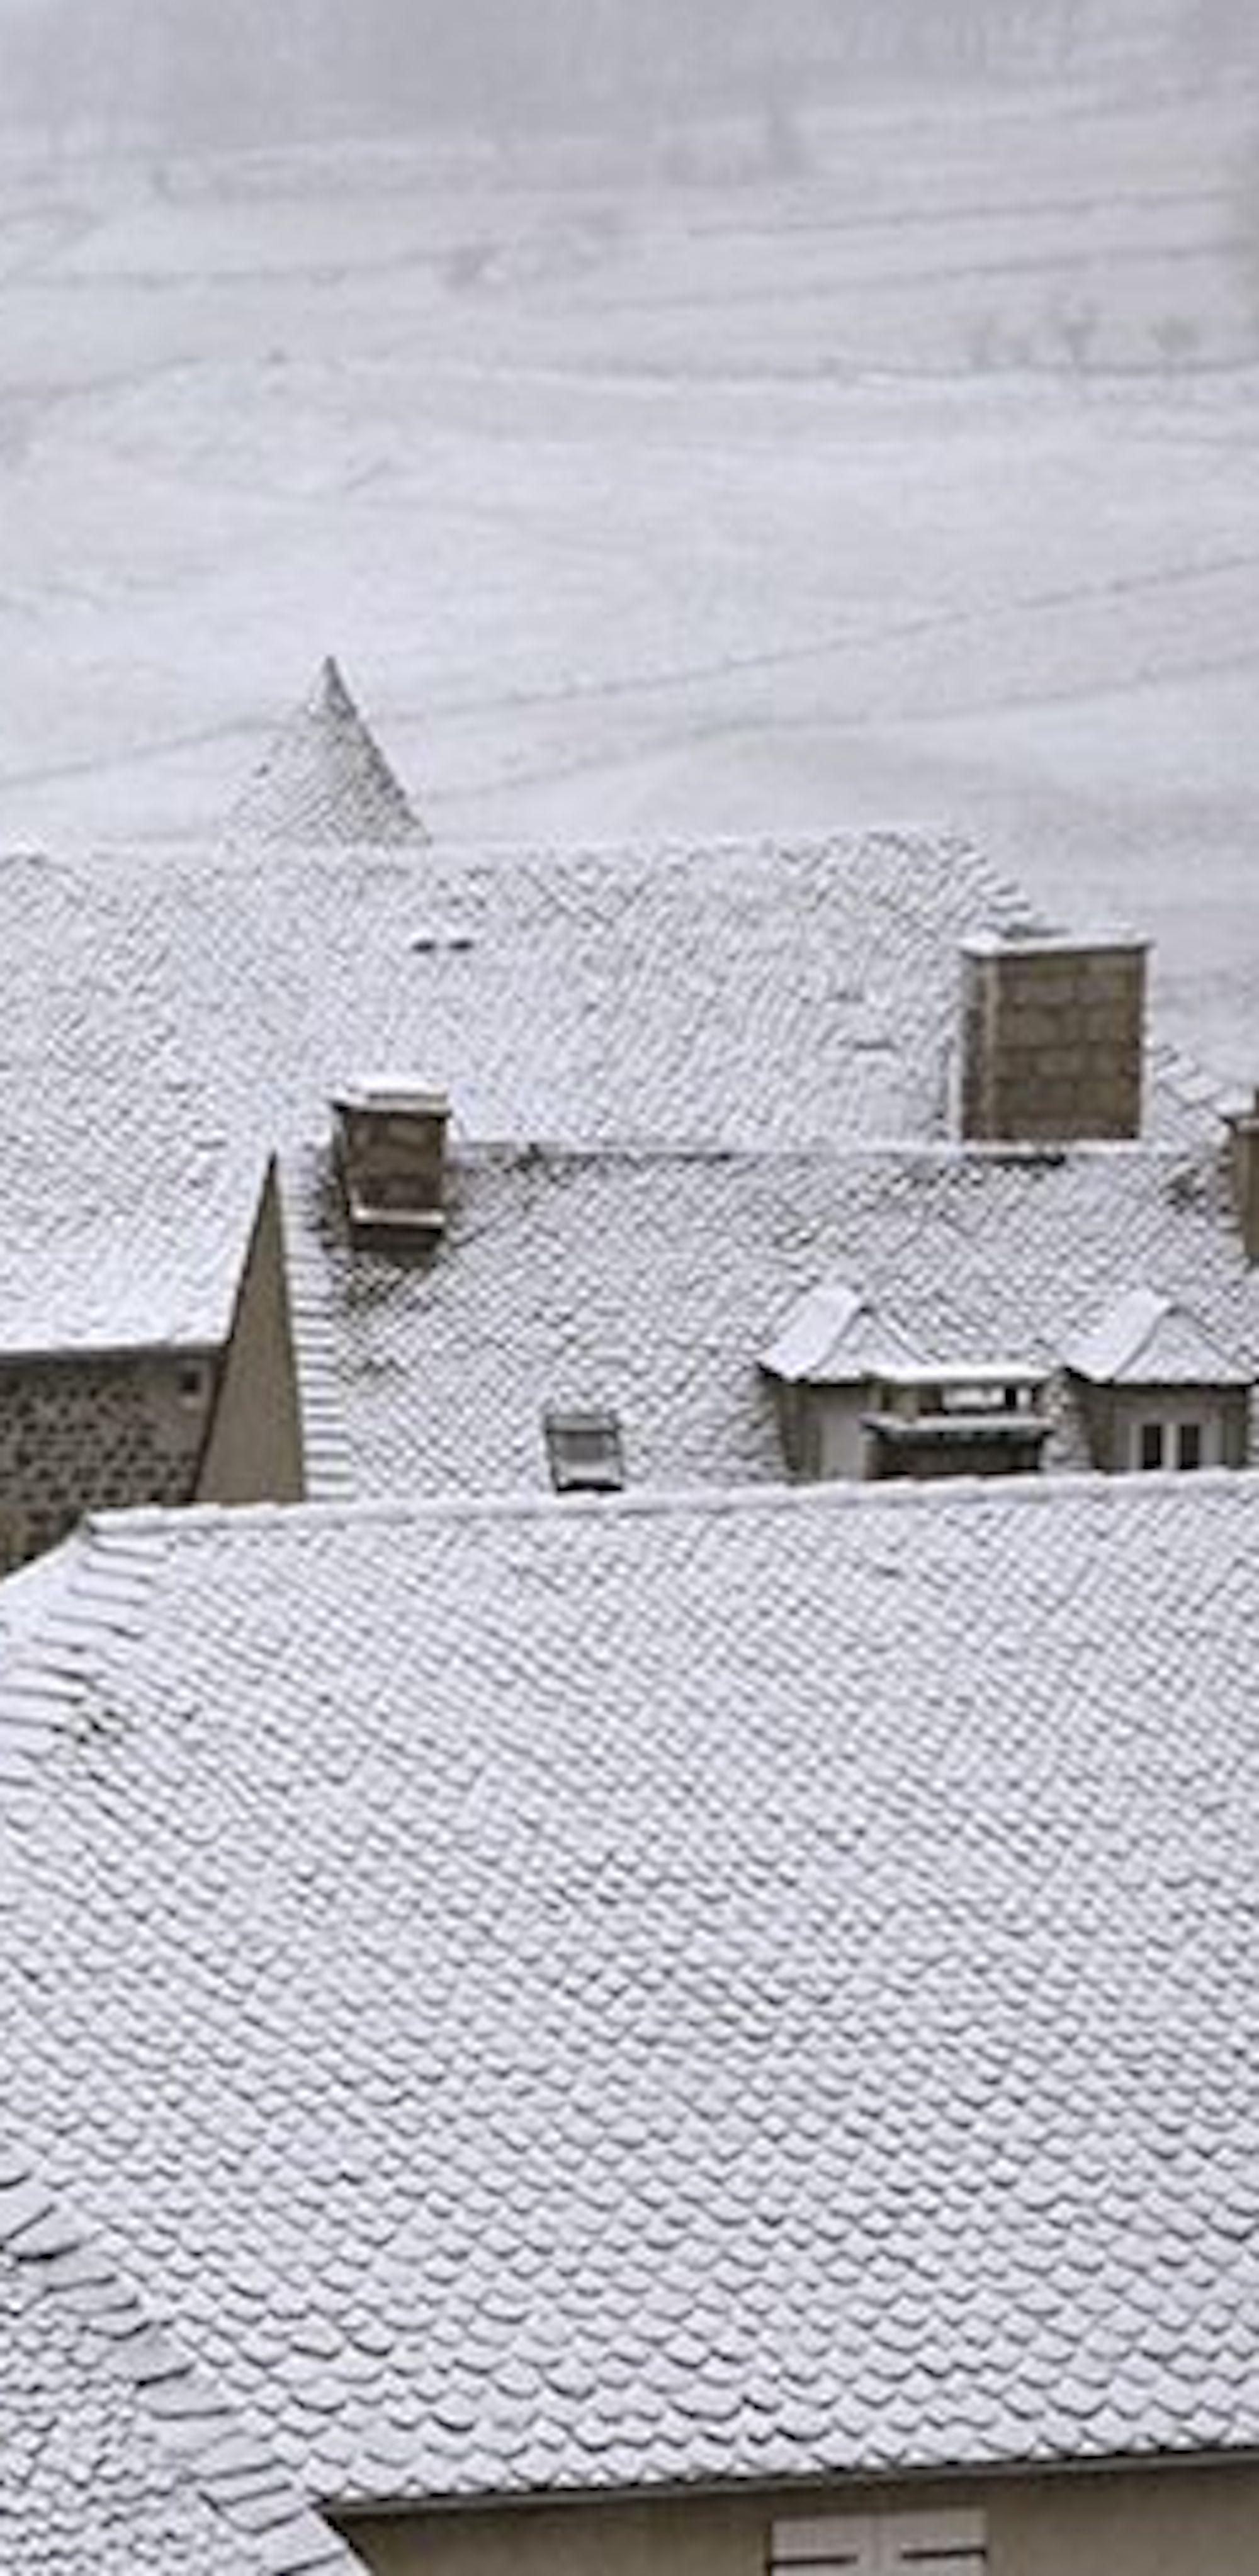 Kacheldach von Christophe Jacrot – Winterlandschaftsfotografie, Gebäude, Schneewittchen im Angebot 4